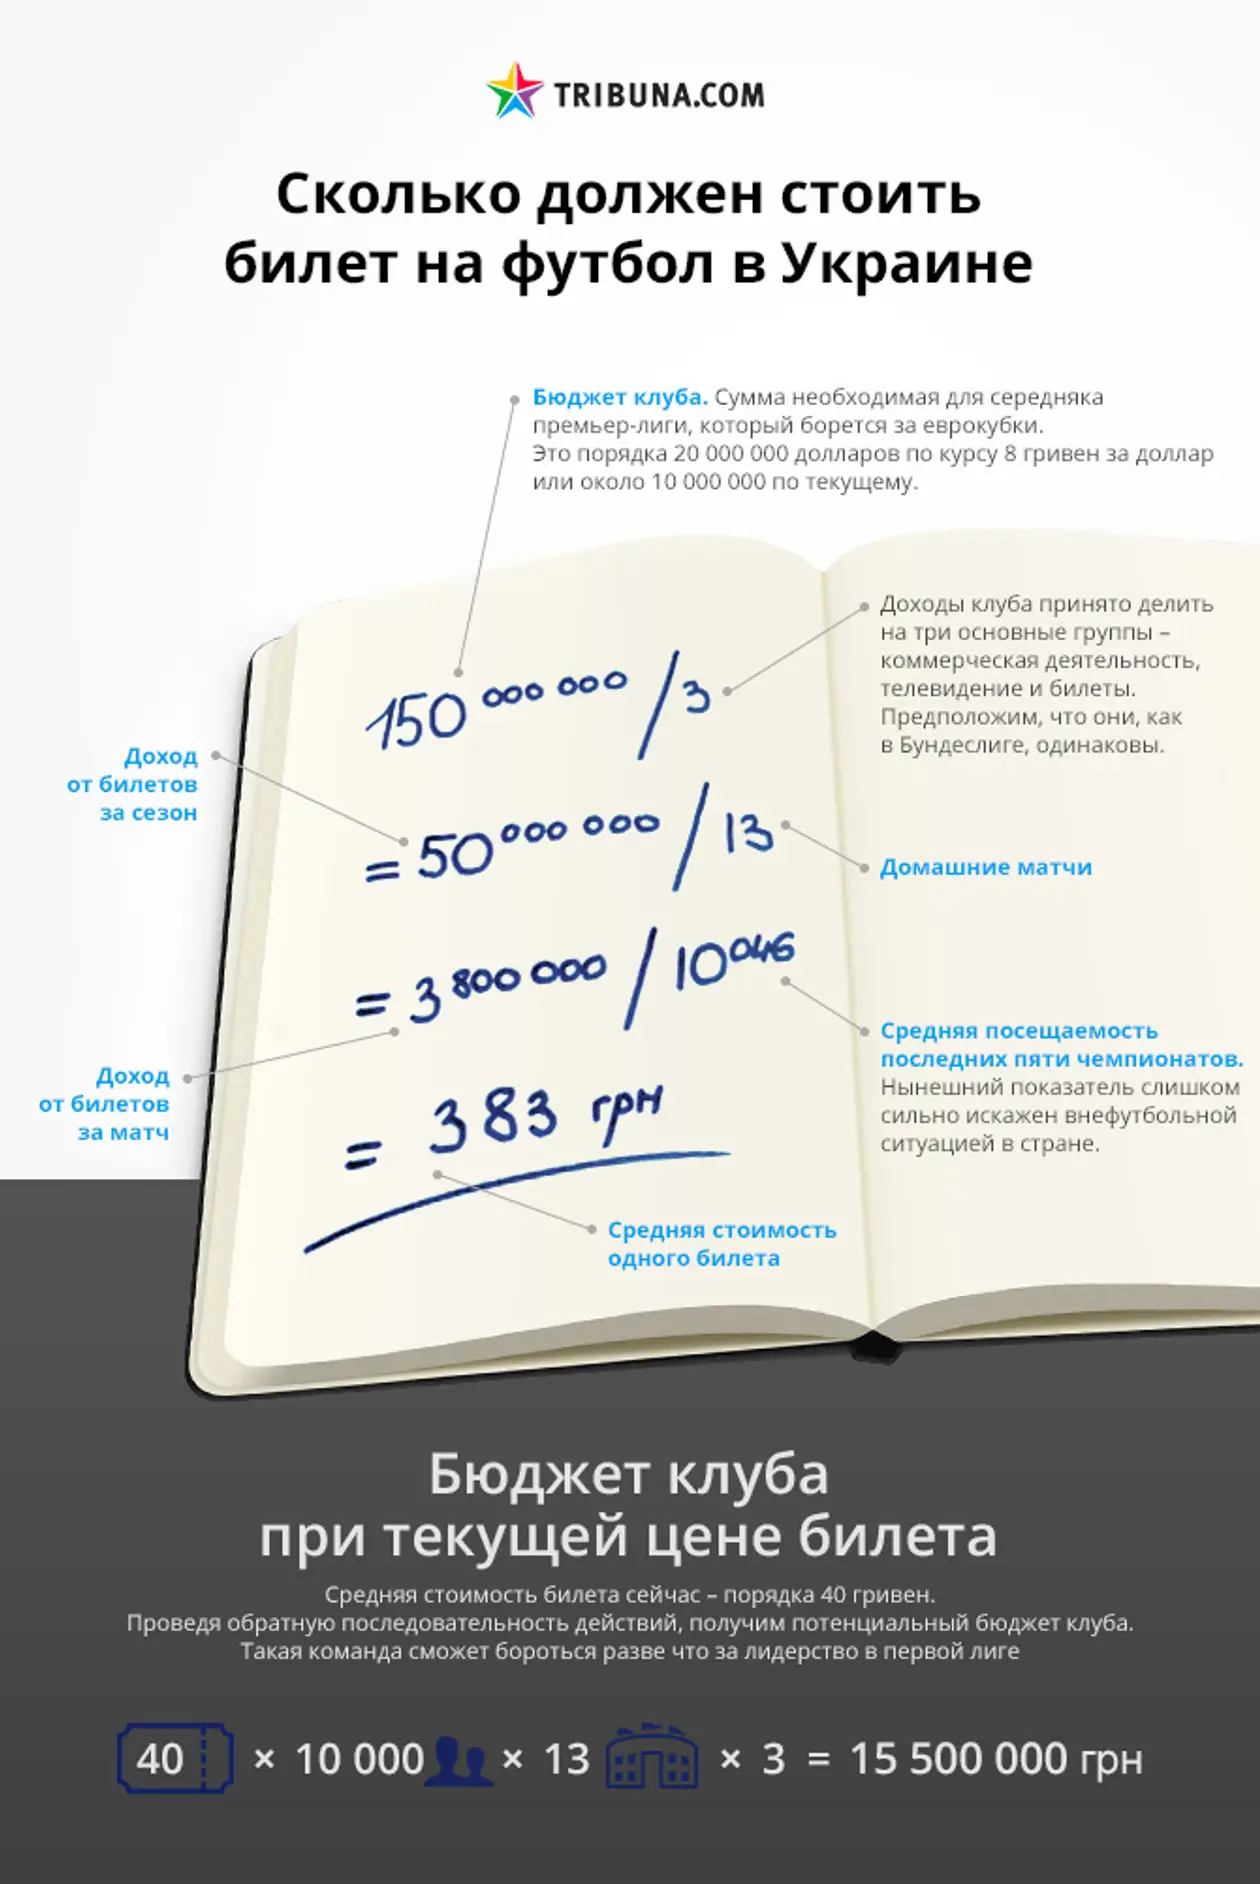 Сколько должен стоить билет на футбол в Украине. Инфографика Tribuna.com